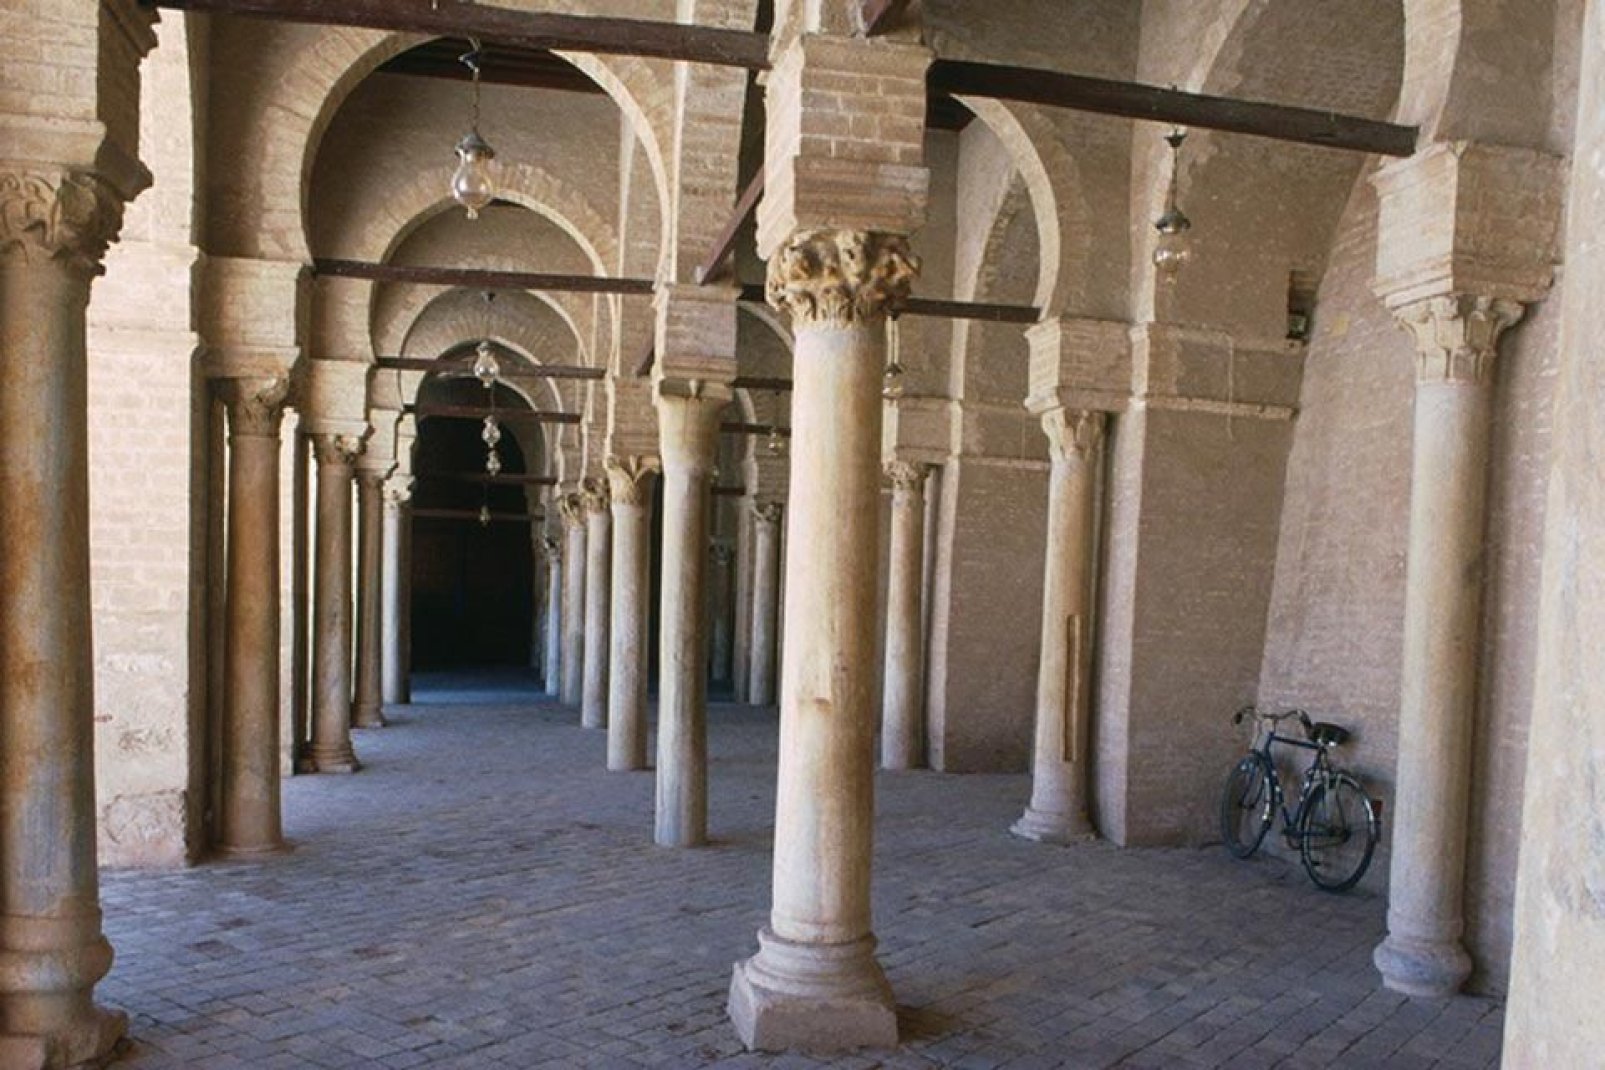 Del mismo modo que la ciudad de Kairuán, la gran mezquita fue declarada patrimonio mundial de la Unesco en 1988.